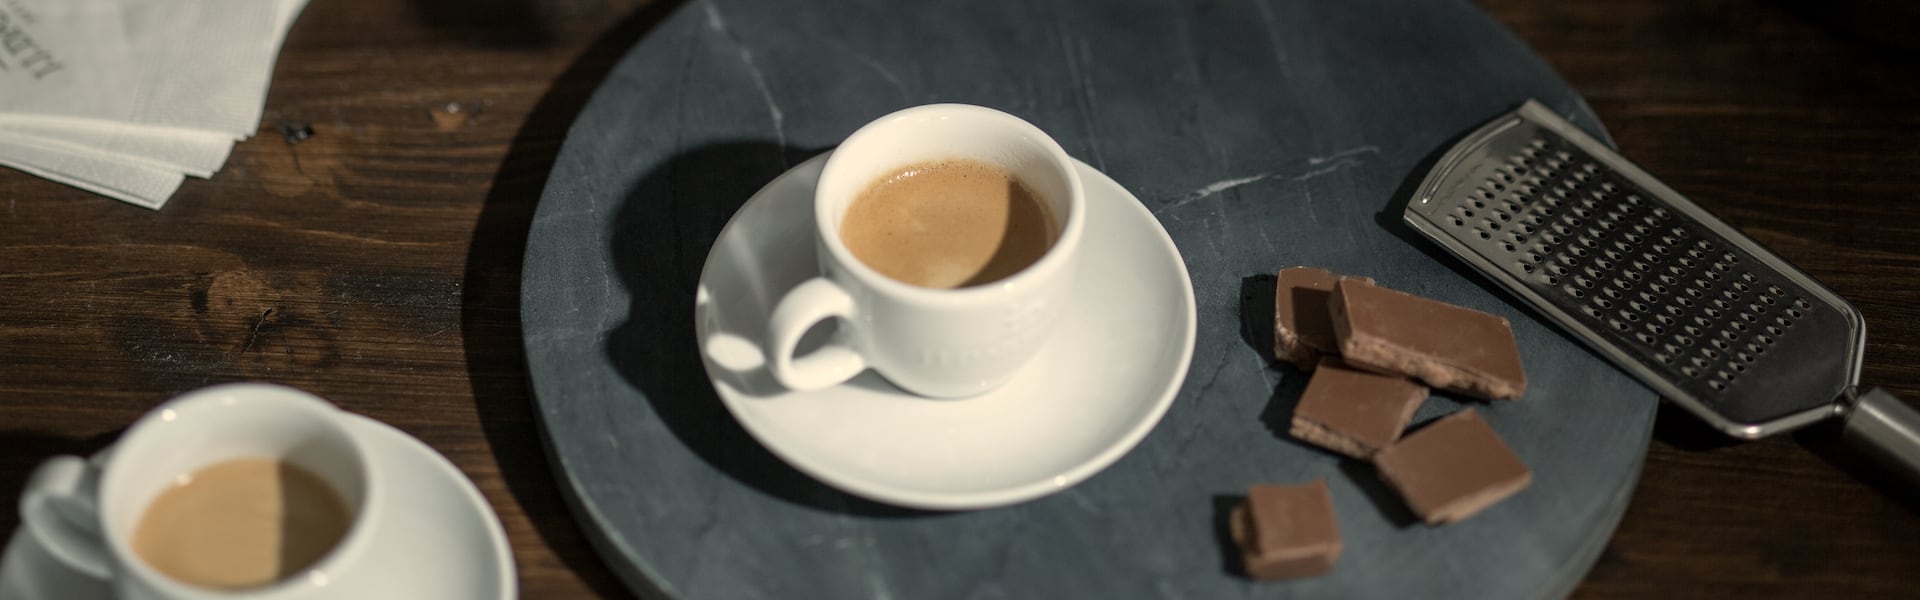 J.J. Darboven Mood Bild – Kaffeetasse, Schokolade und Raspel auf Teller